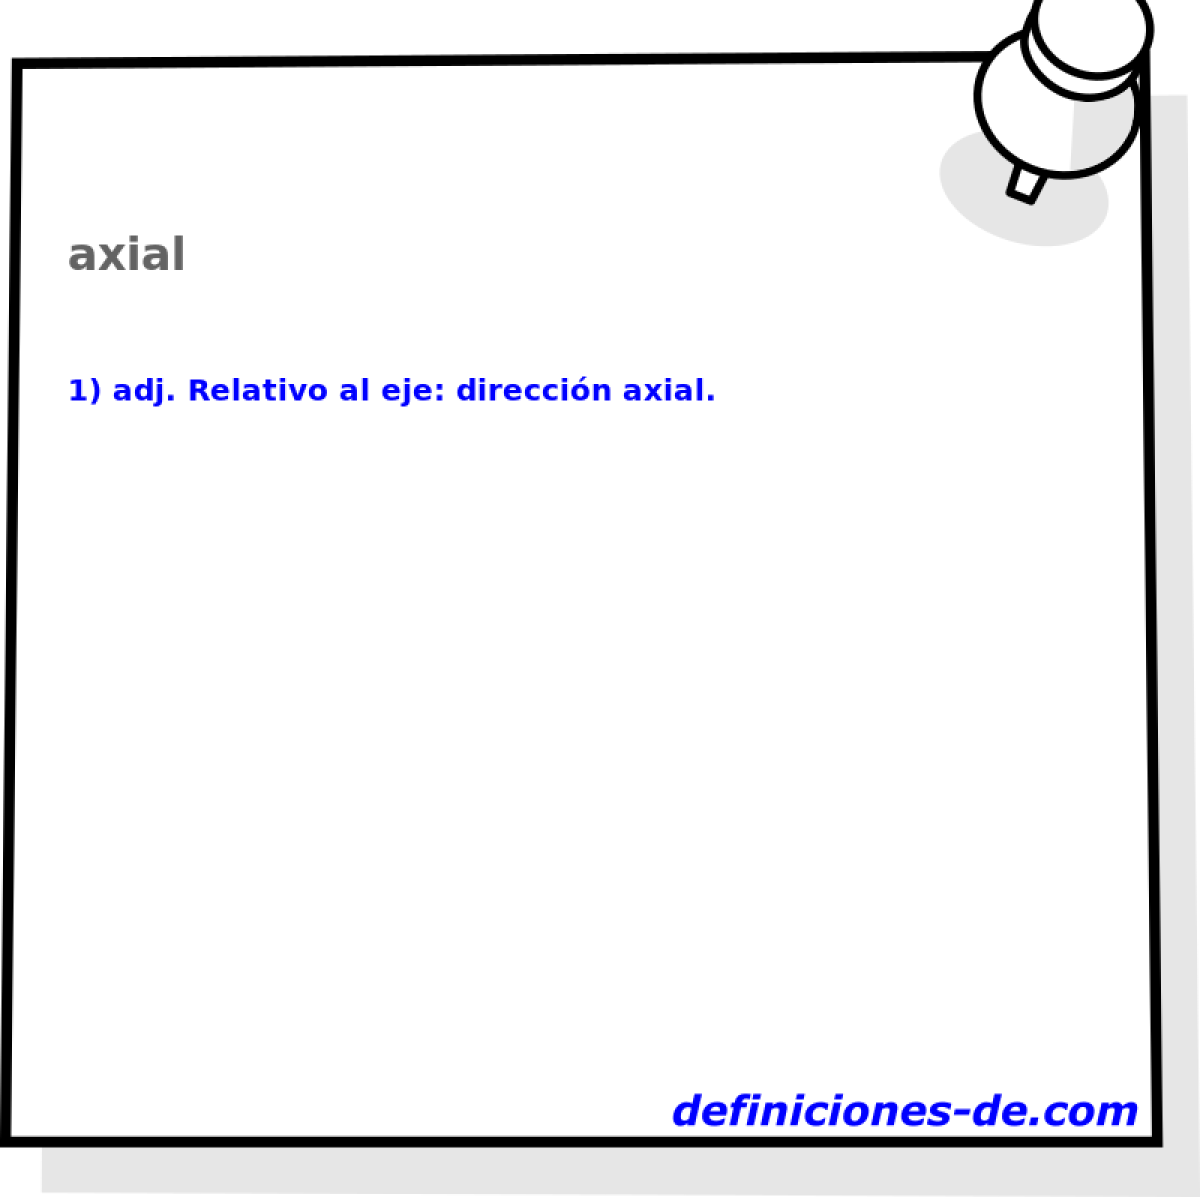 axial 